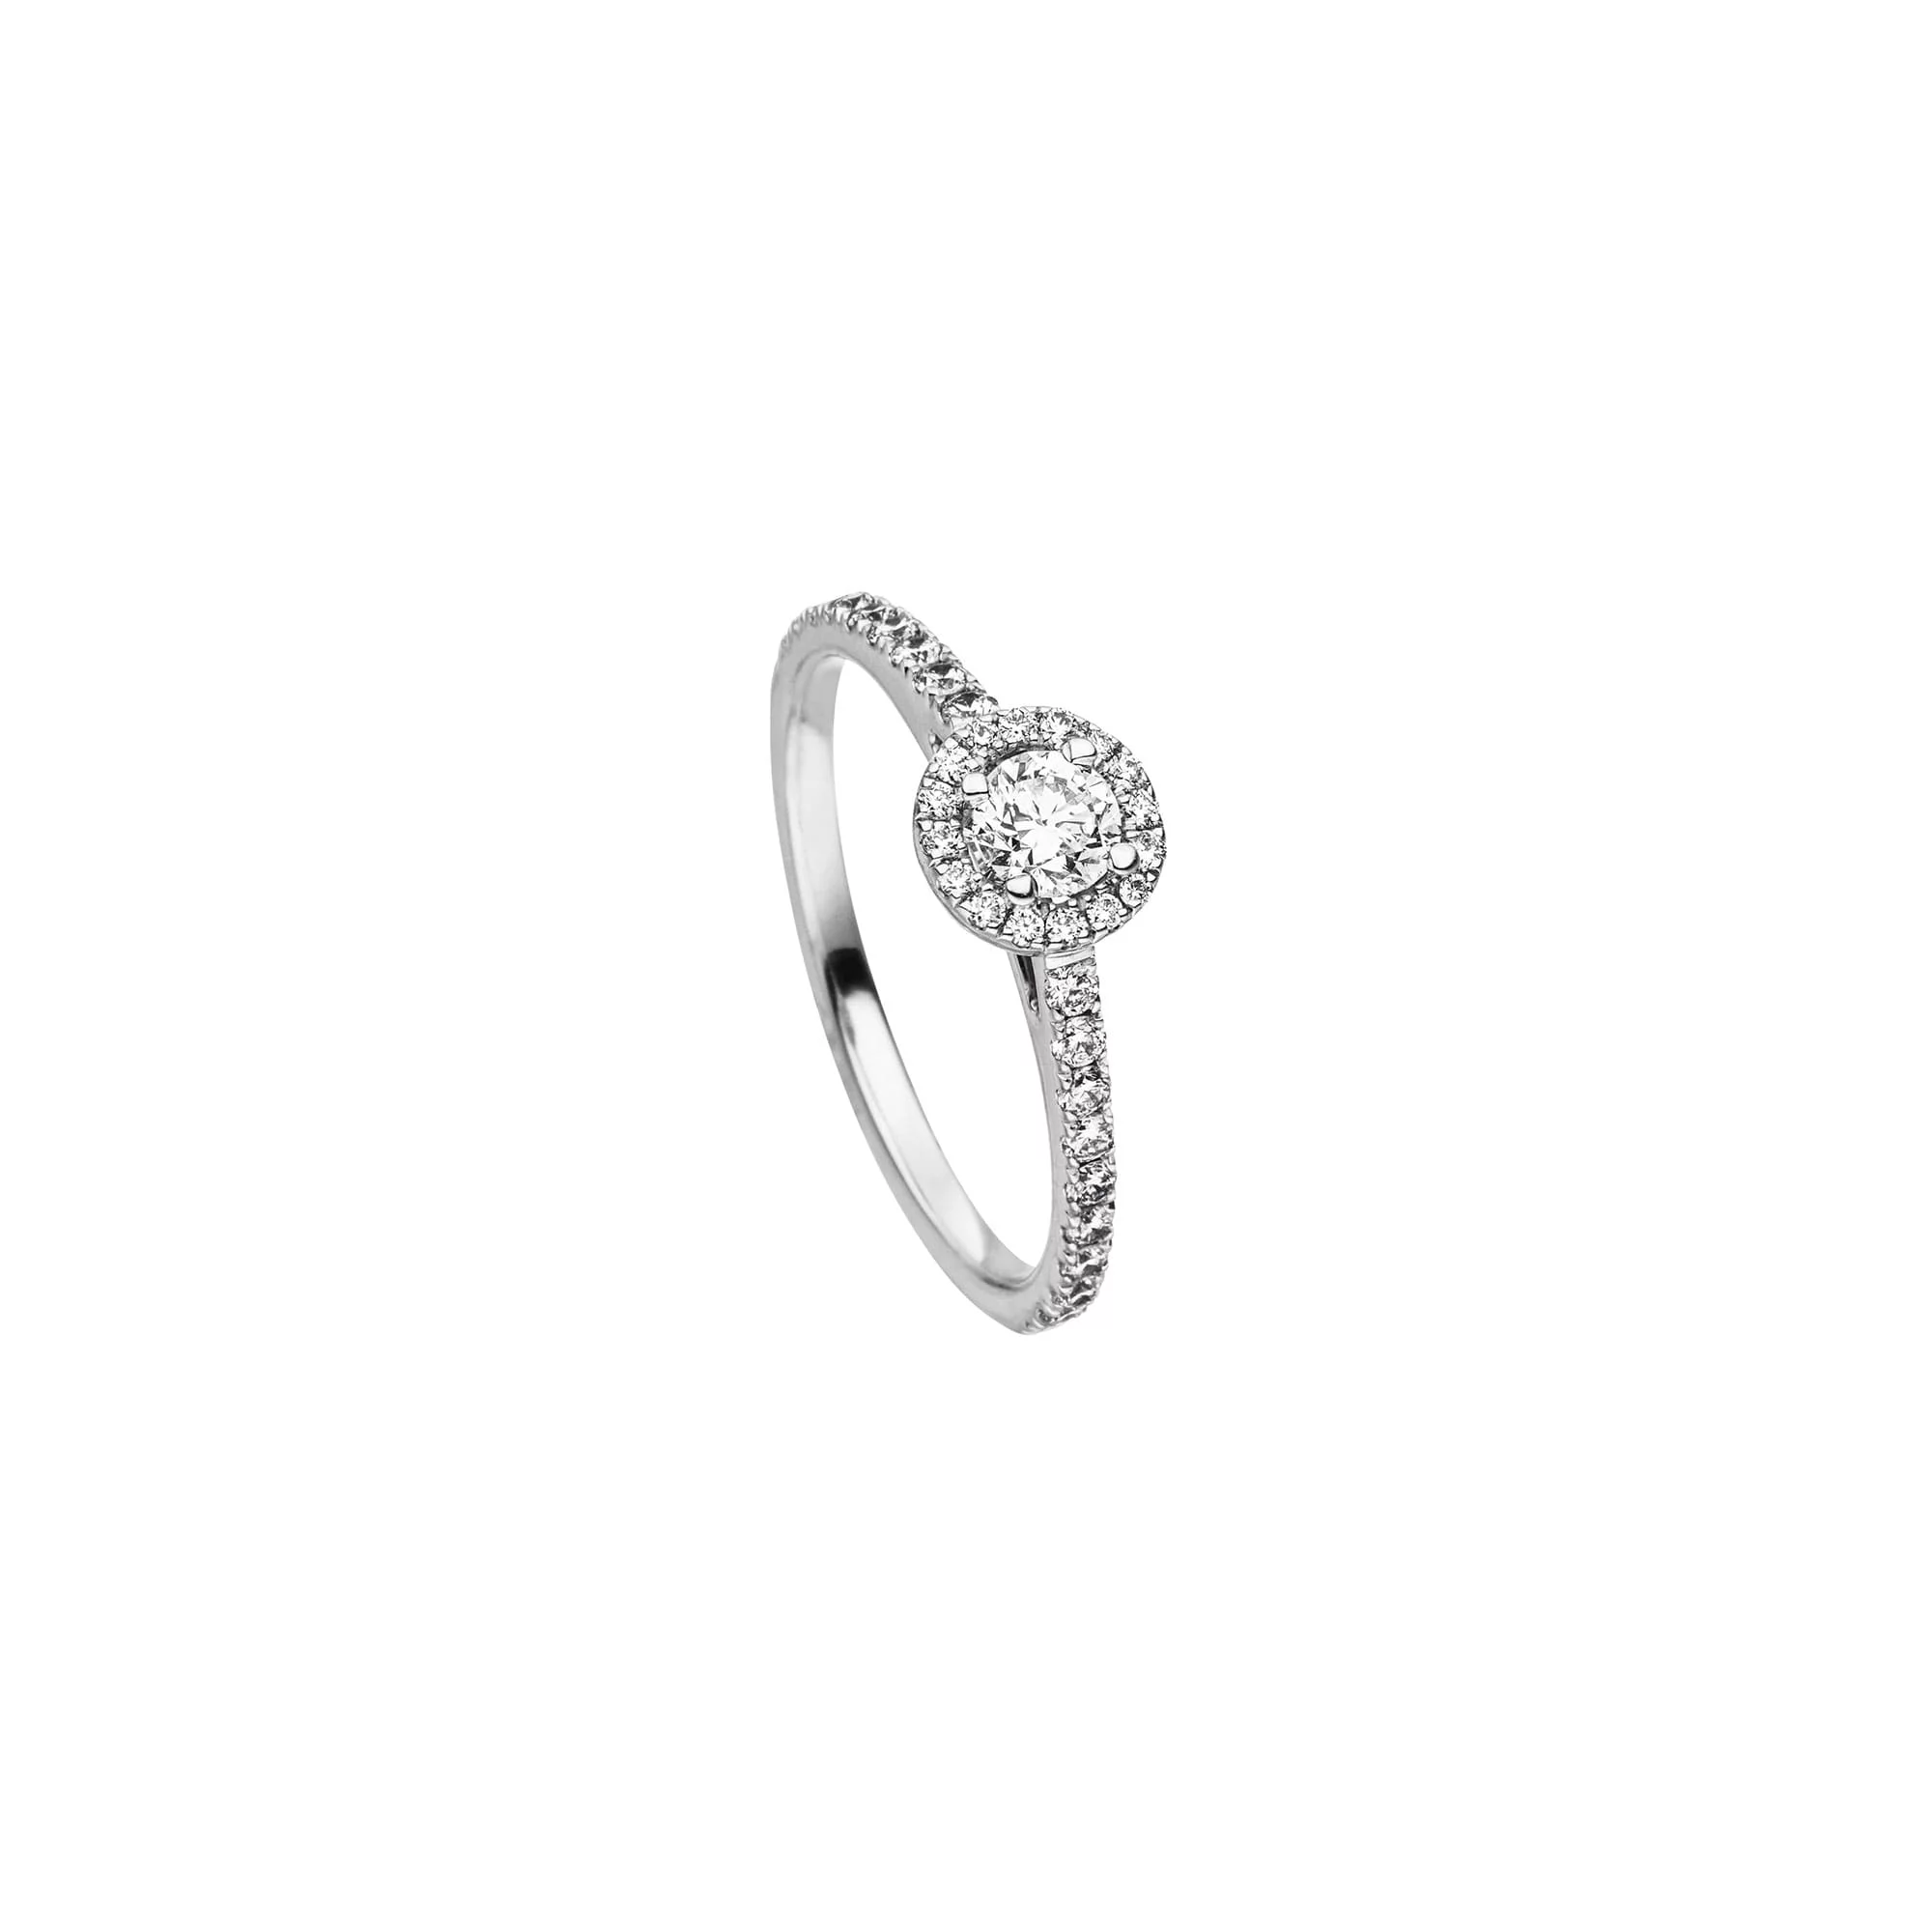 Platin Ring "Unika" mit Diamant im Emerald Schliff von Atelier Fridrich bei Juwelier Fridrich in München